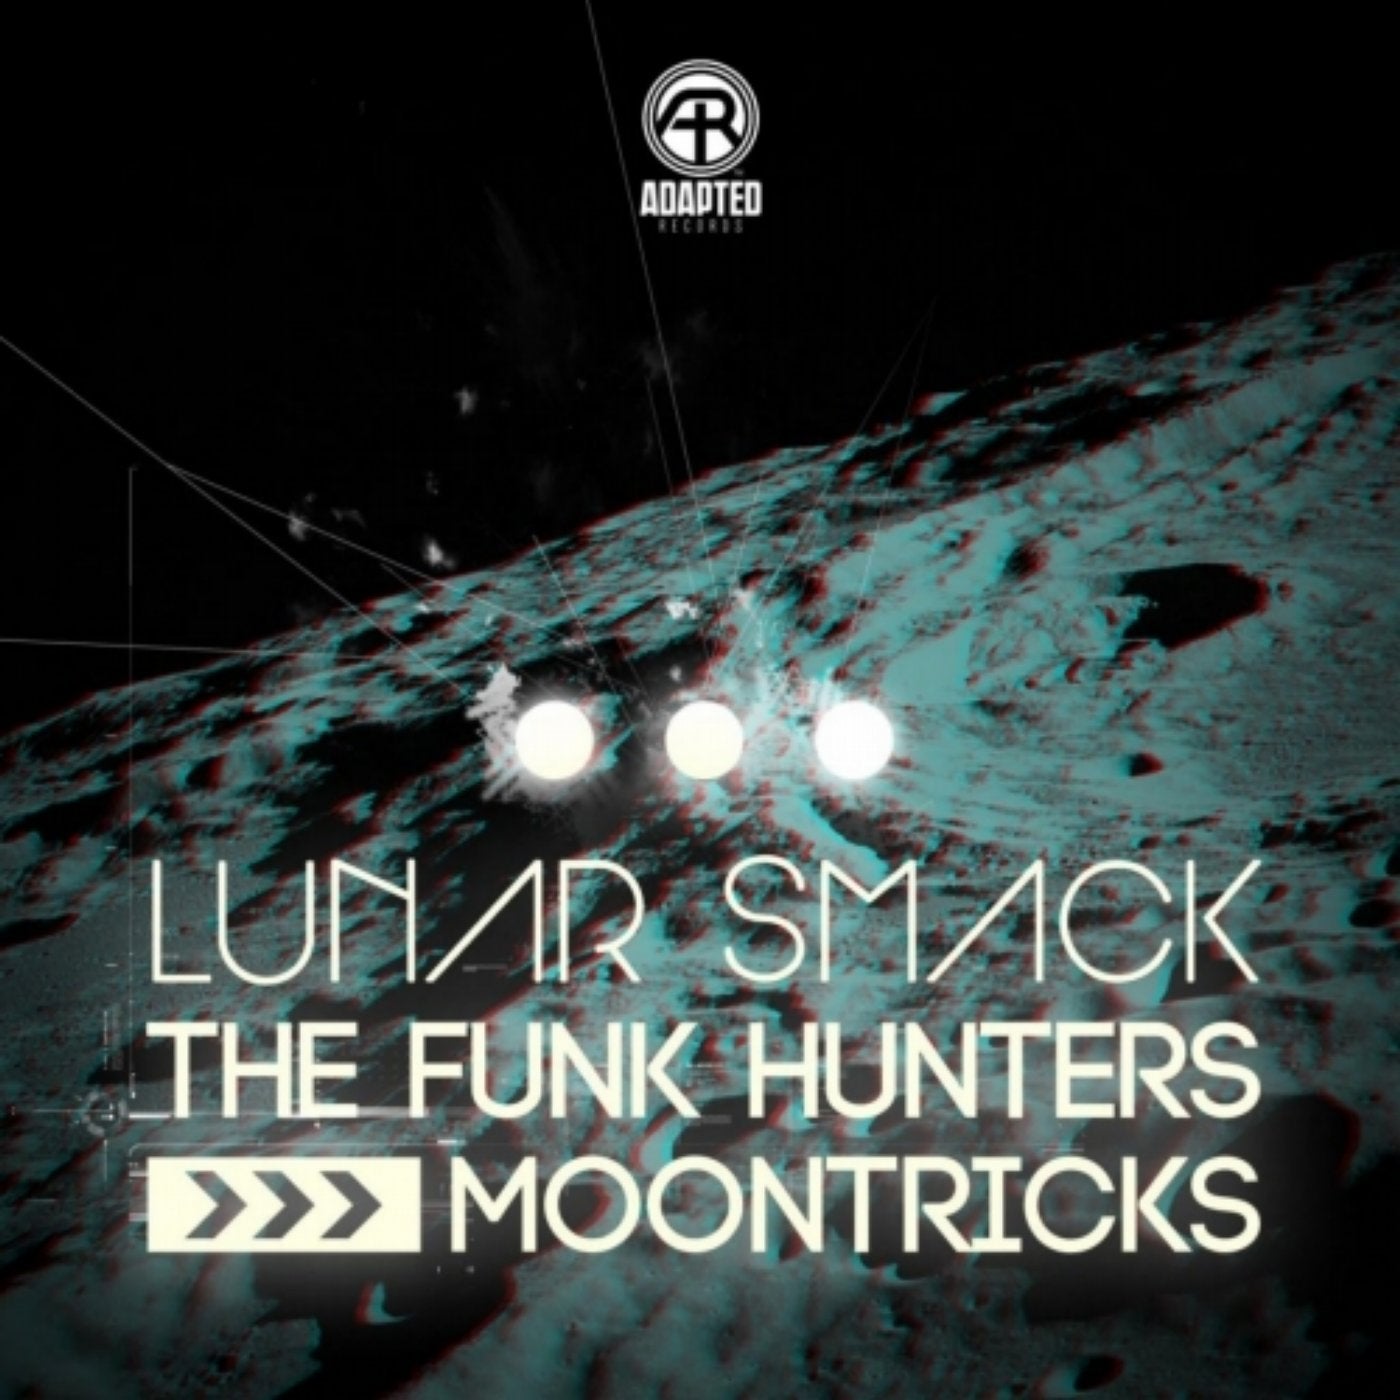 Lunar Smack